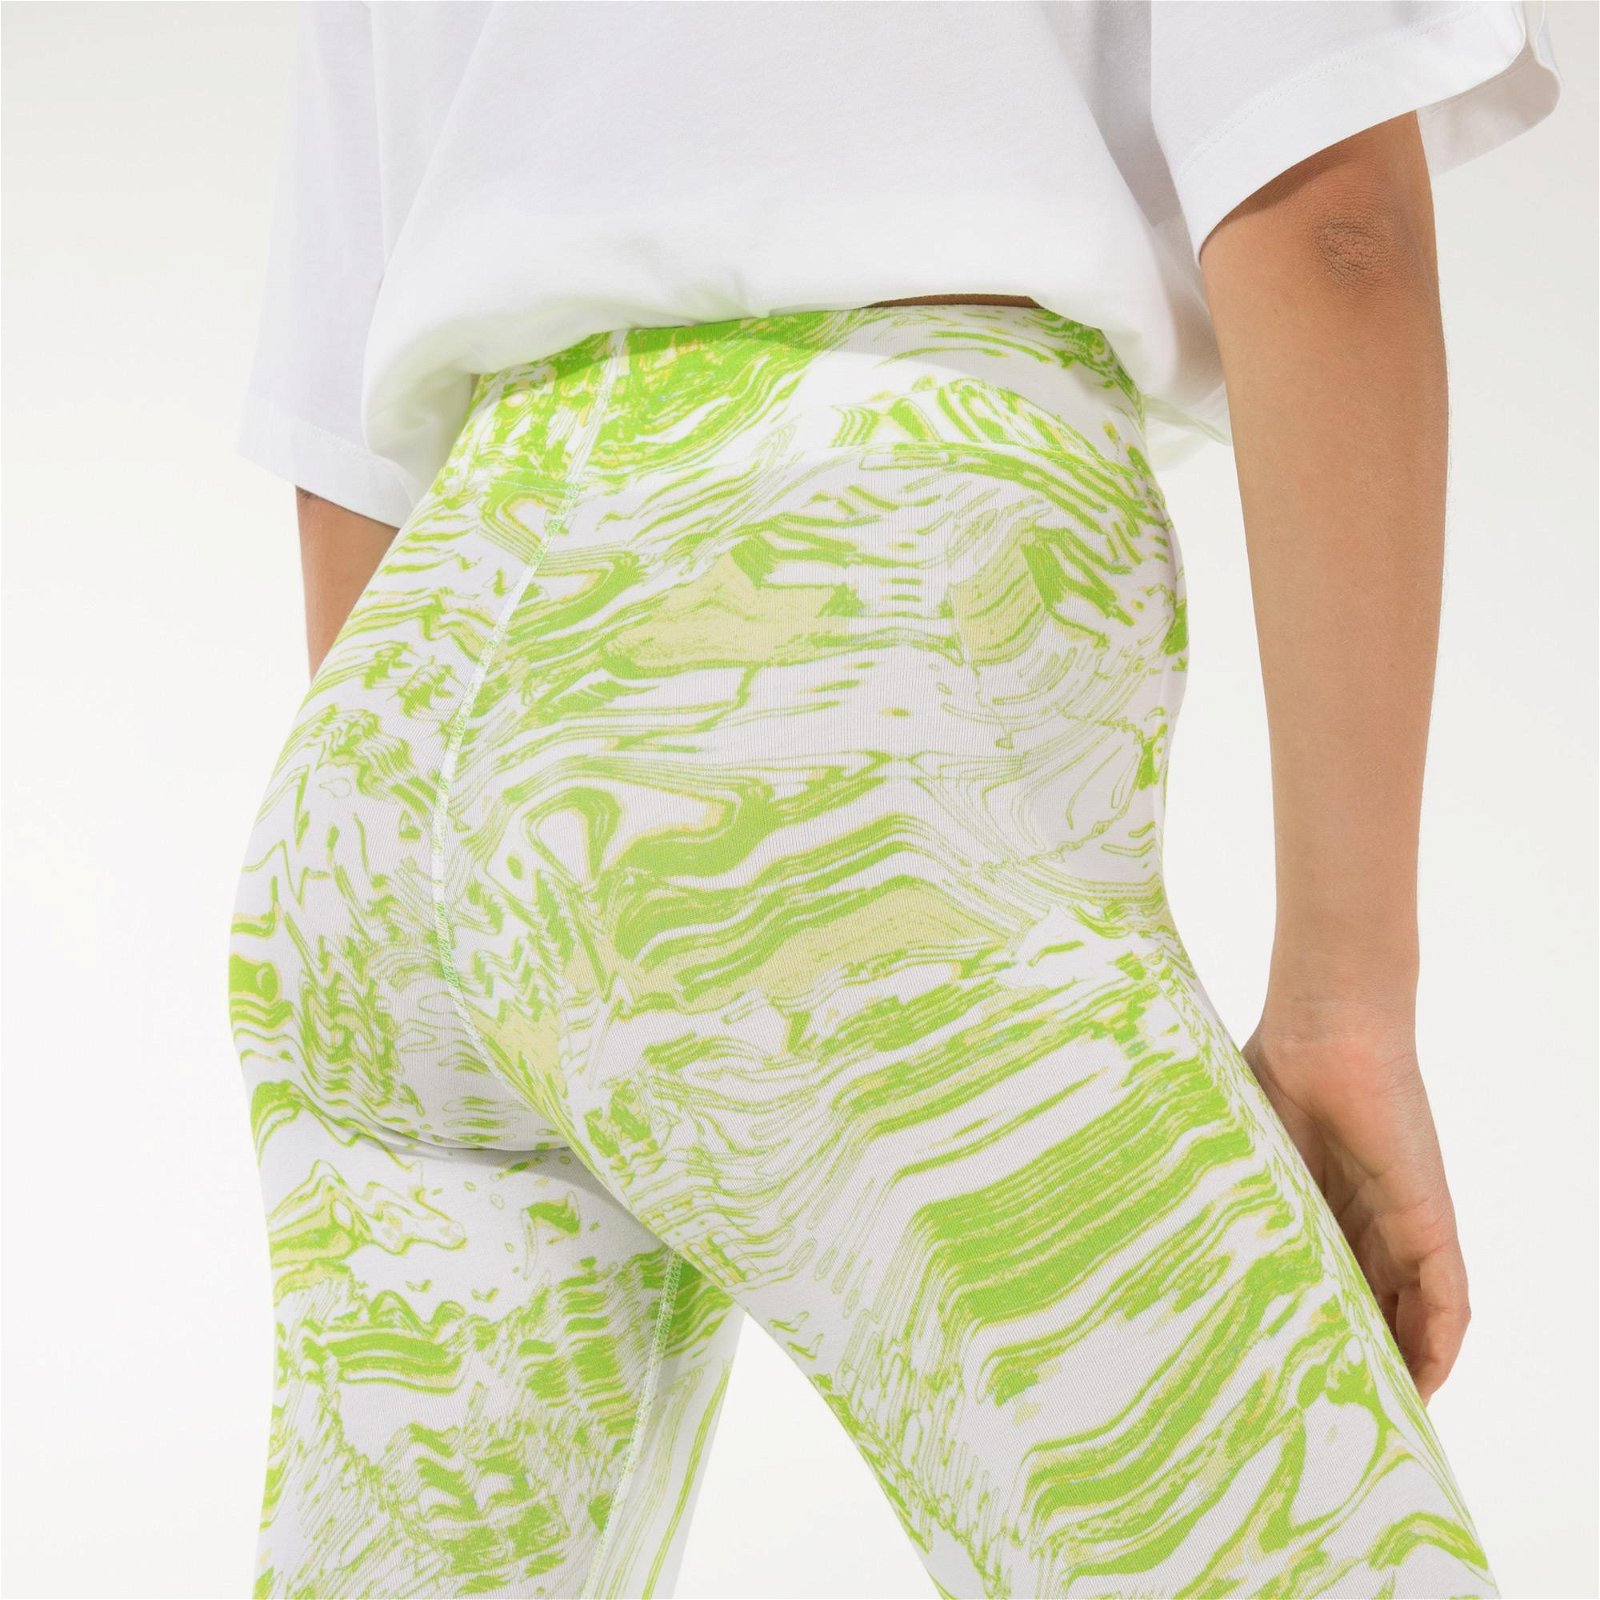 Nike Sportswear Aop Print Kadın Yeşil Tayt